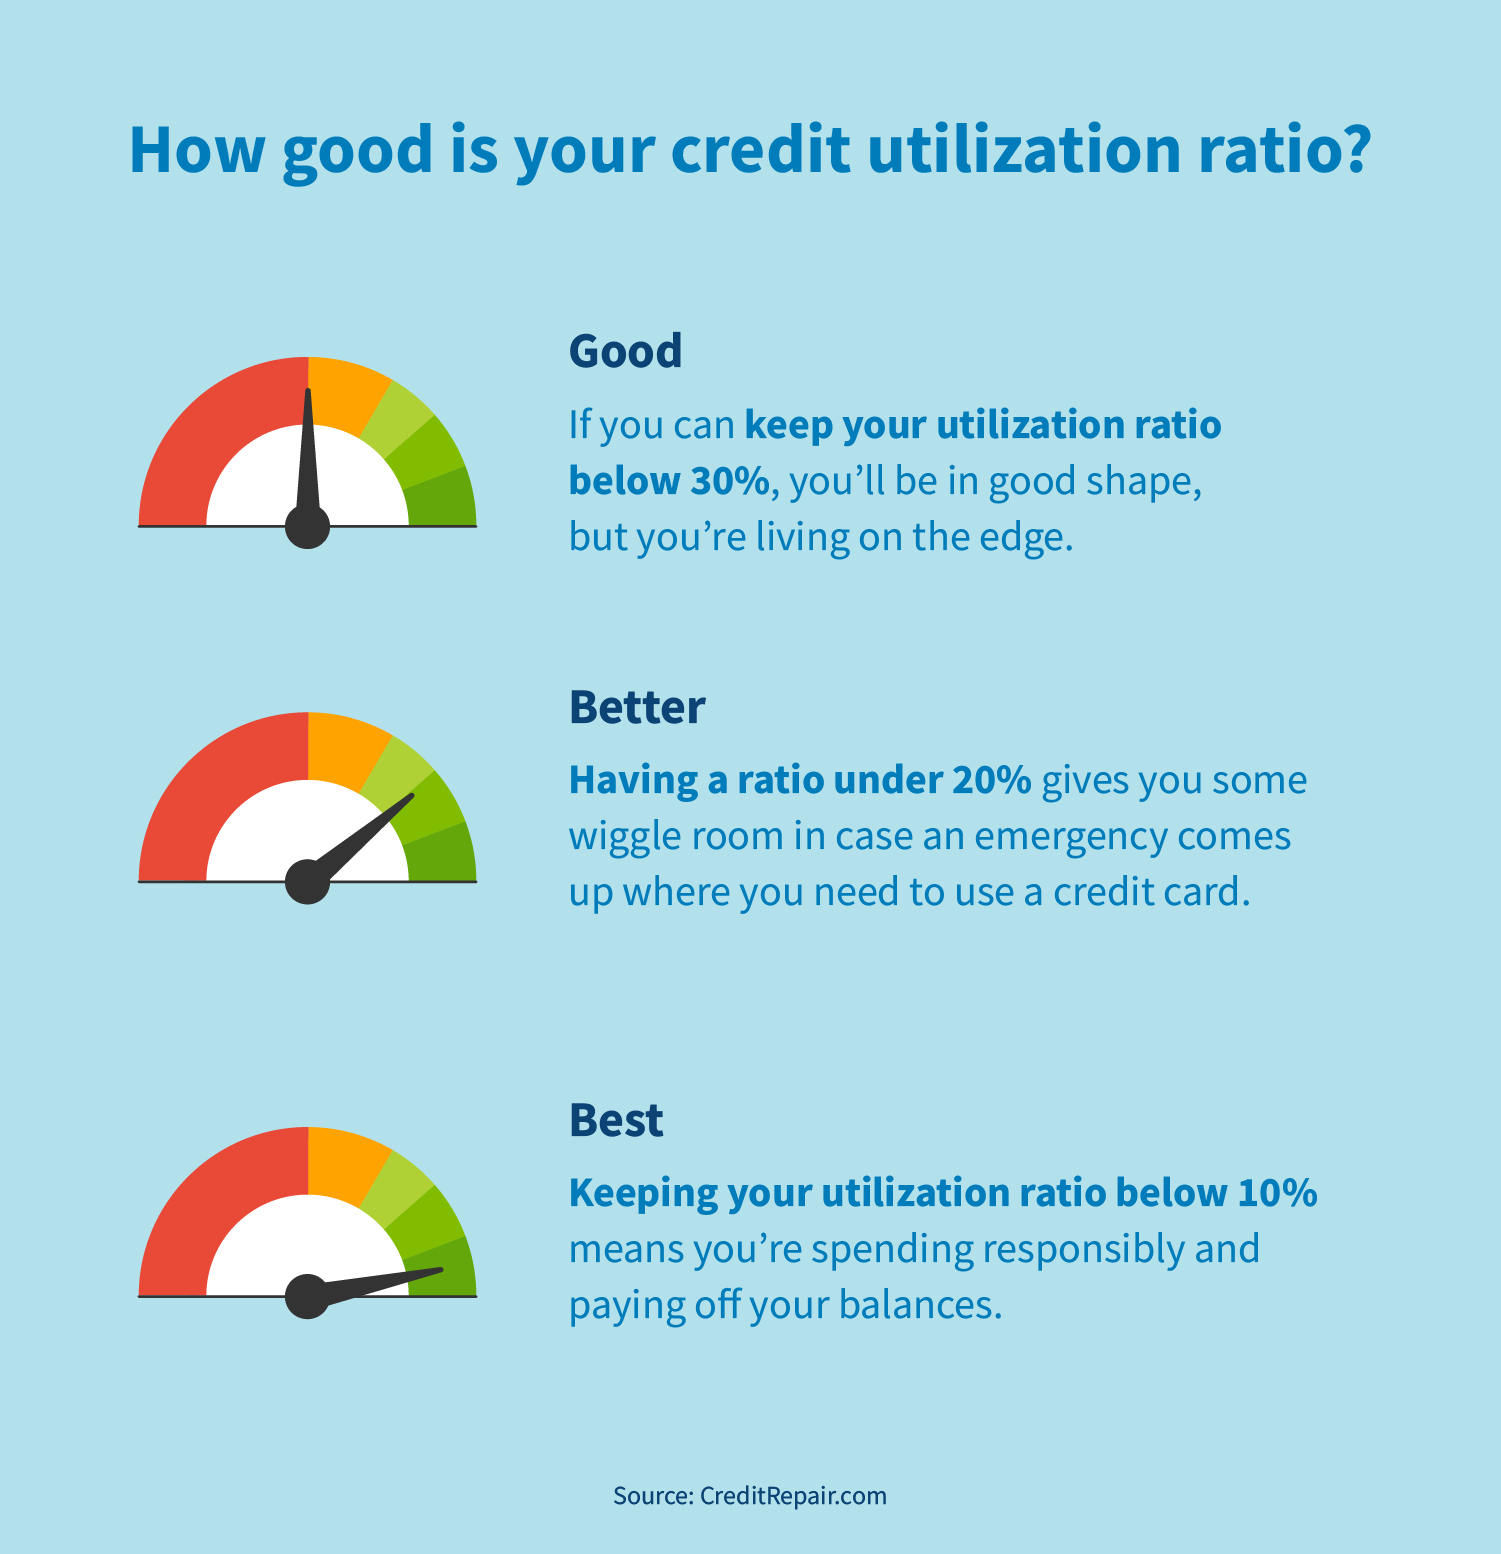 Improved credit utilization